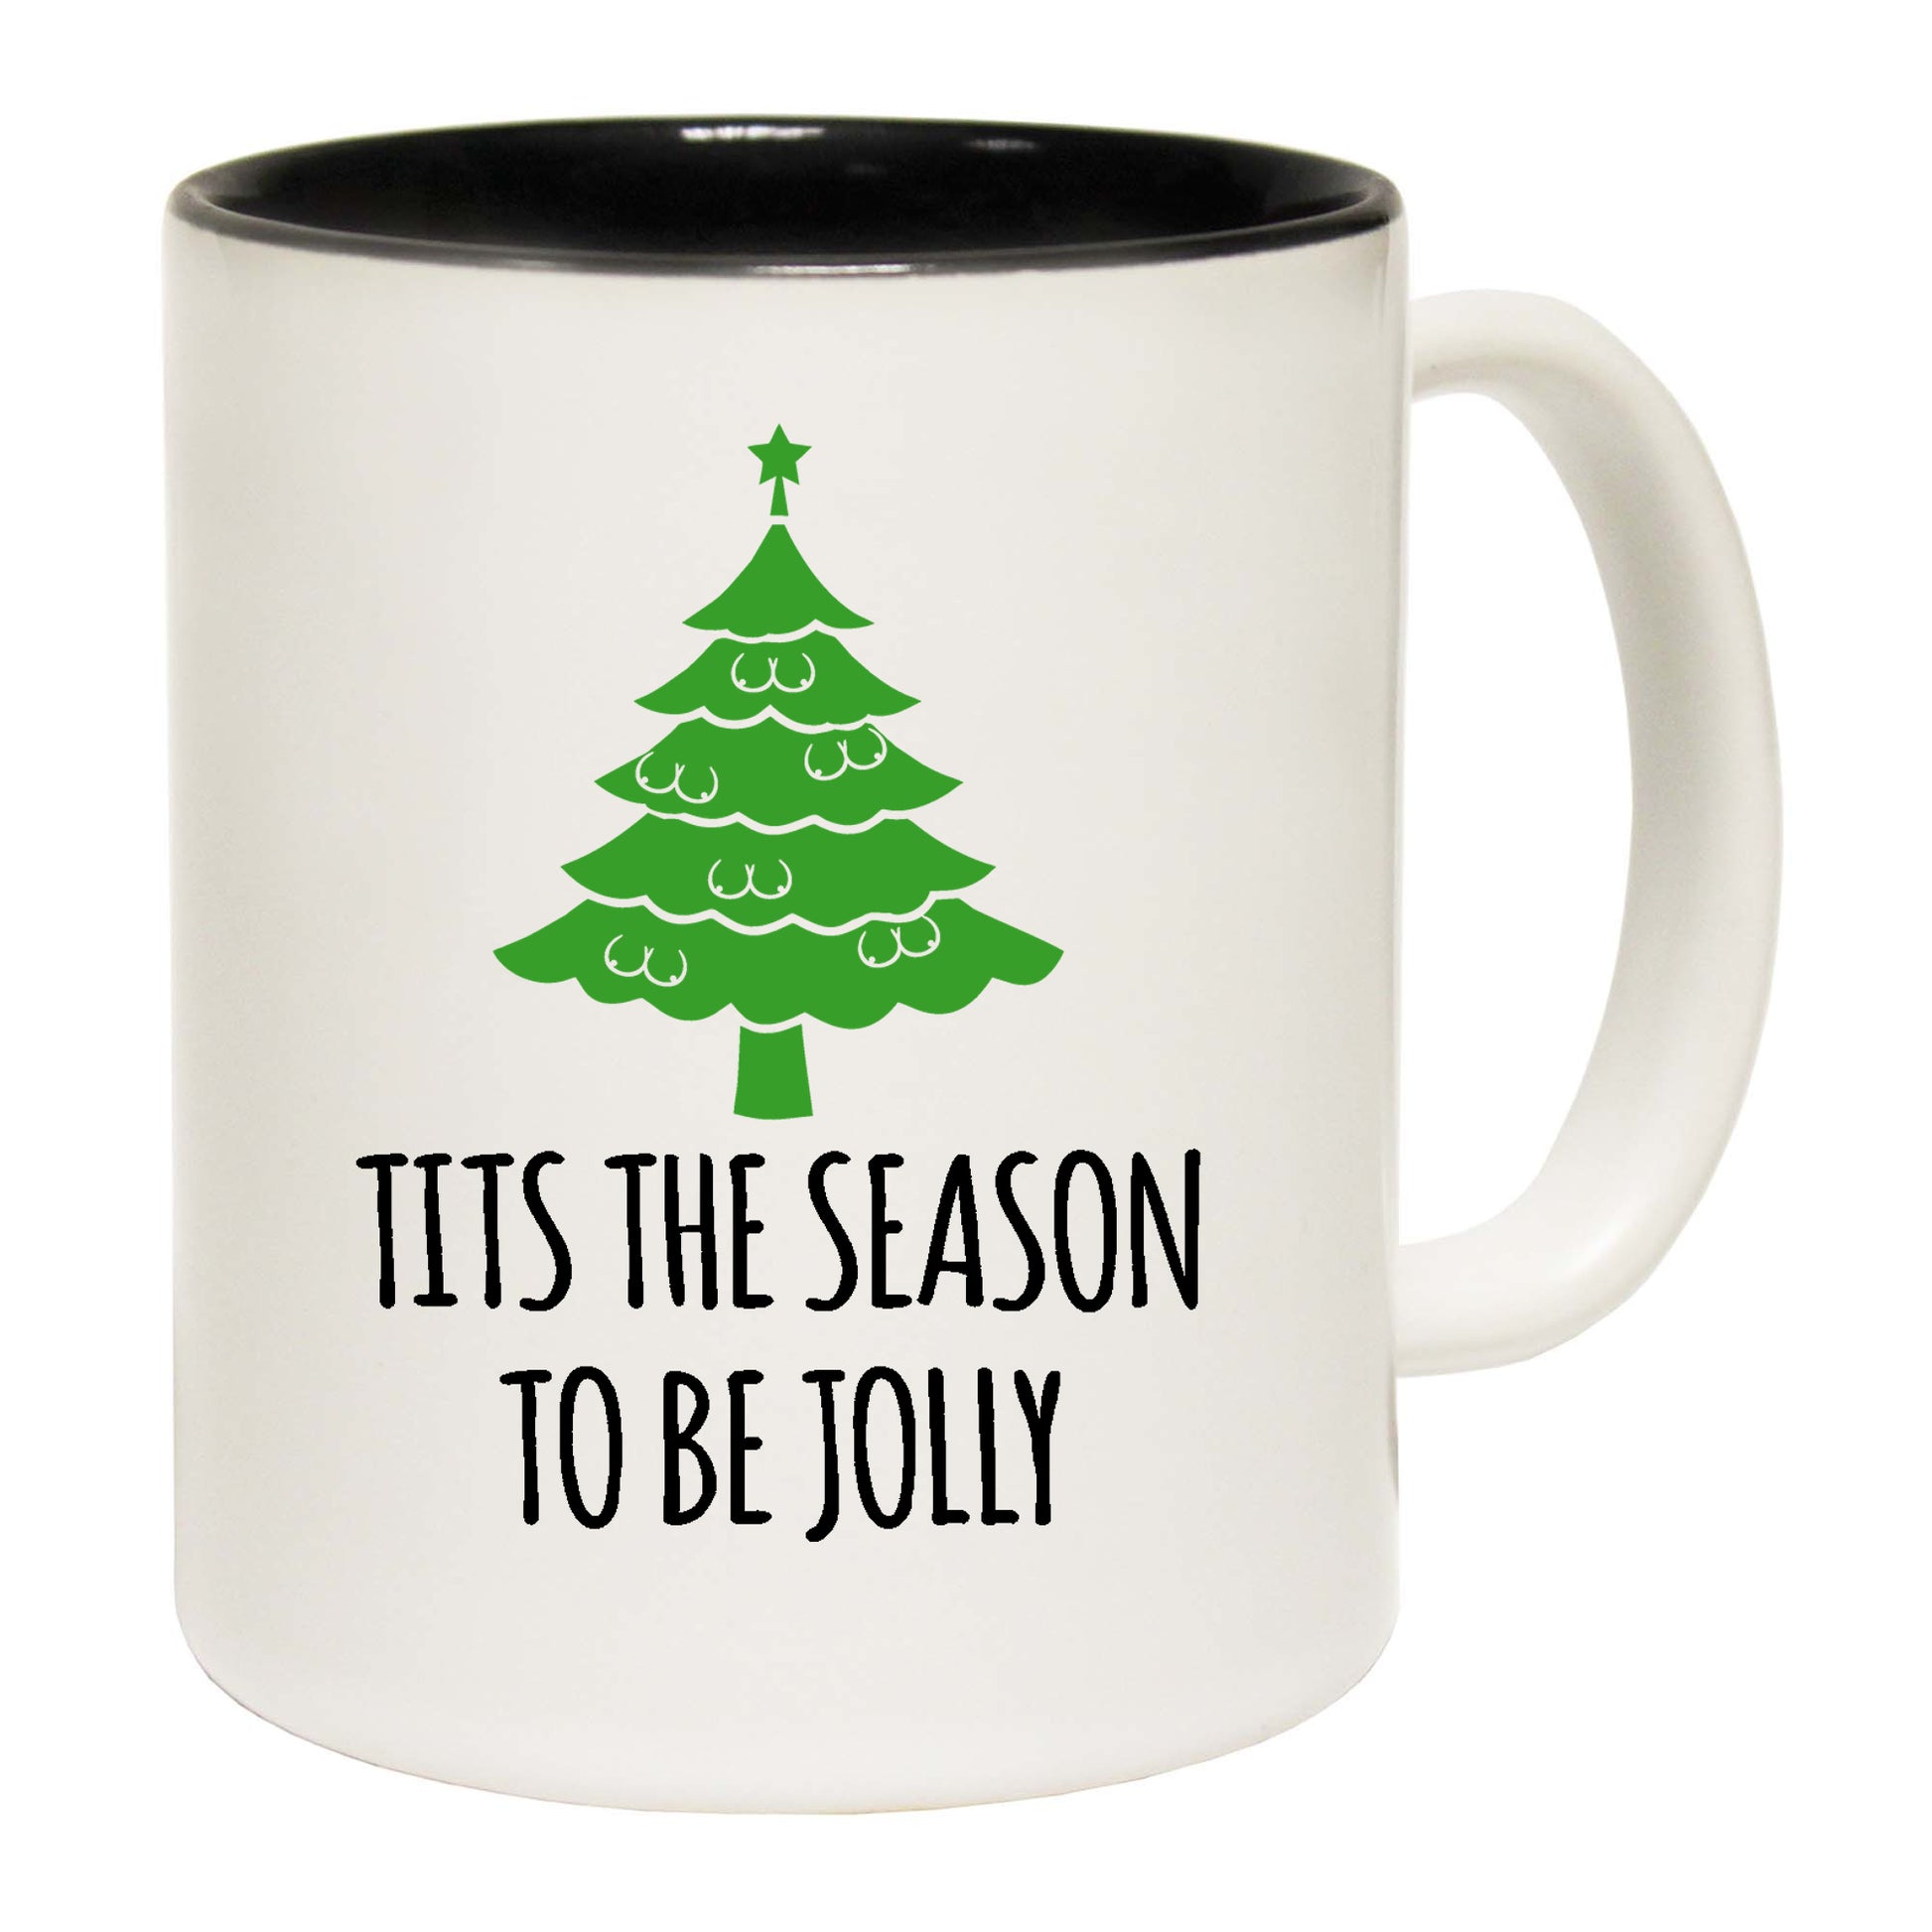 The Christmas Hub - Christmas Tits The Season To Be Jolly - Funny Coffee Mug